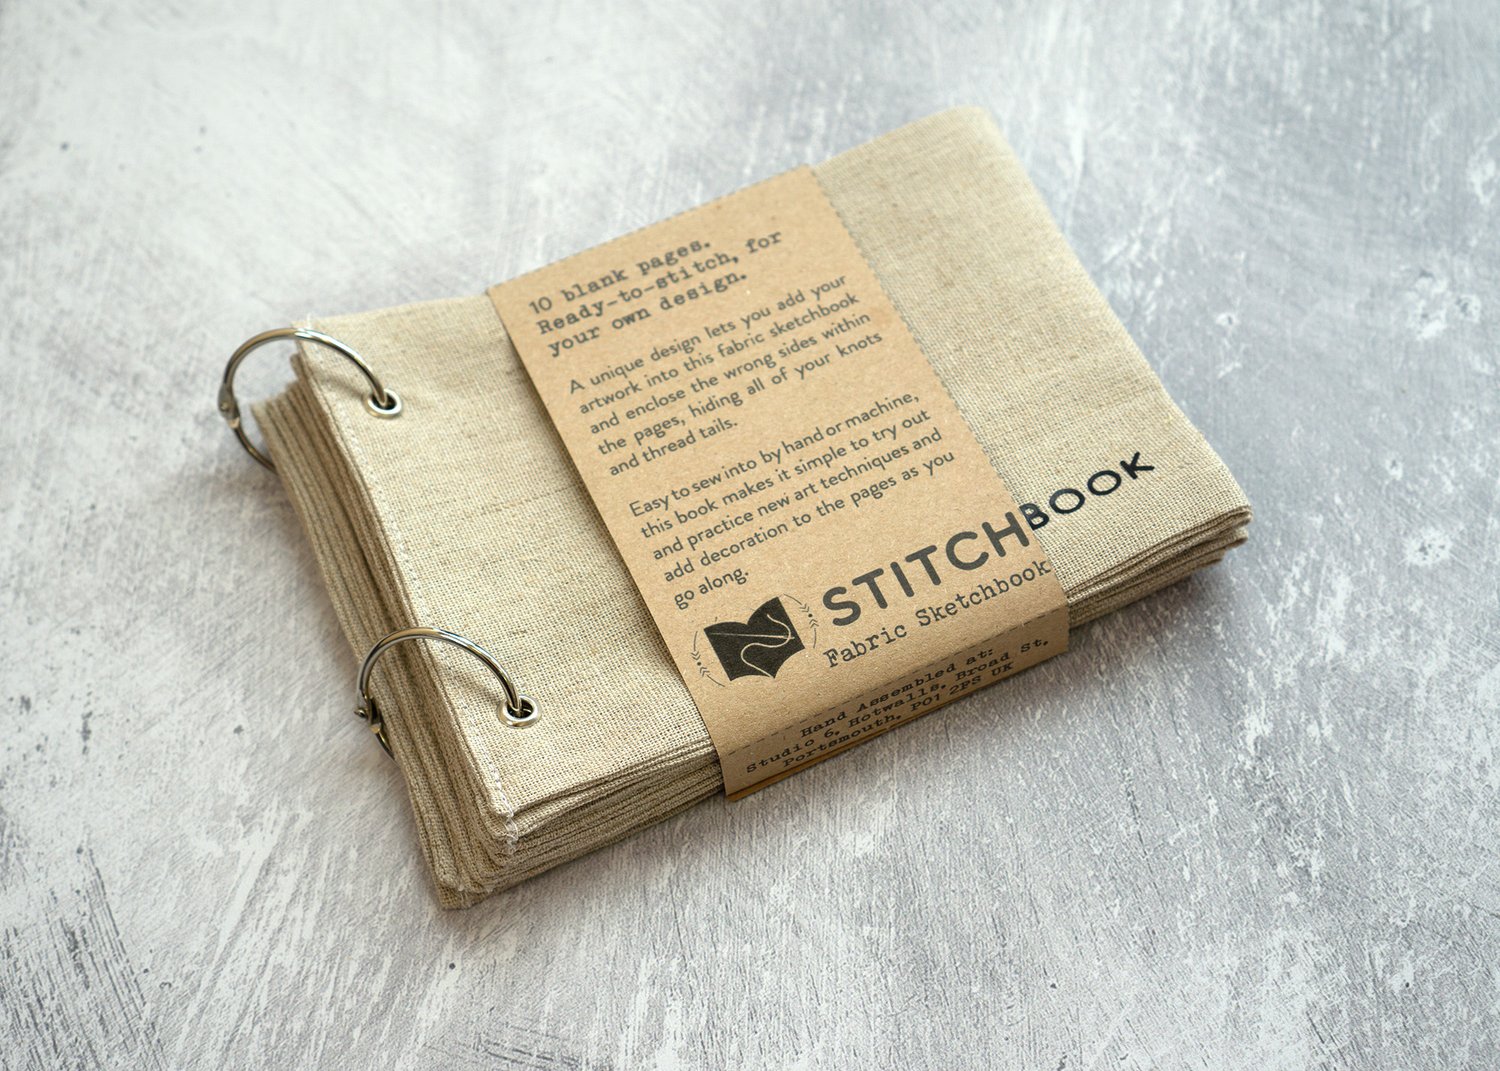 Stitchbook Shop — Stitchbook Studio